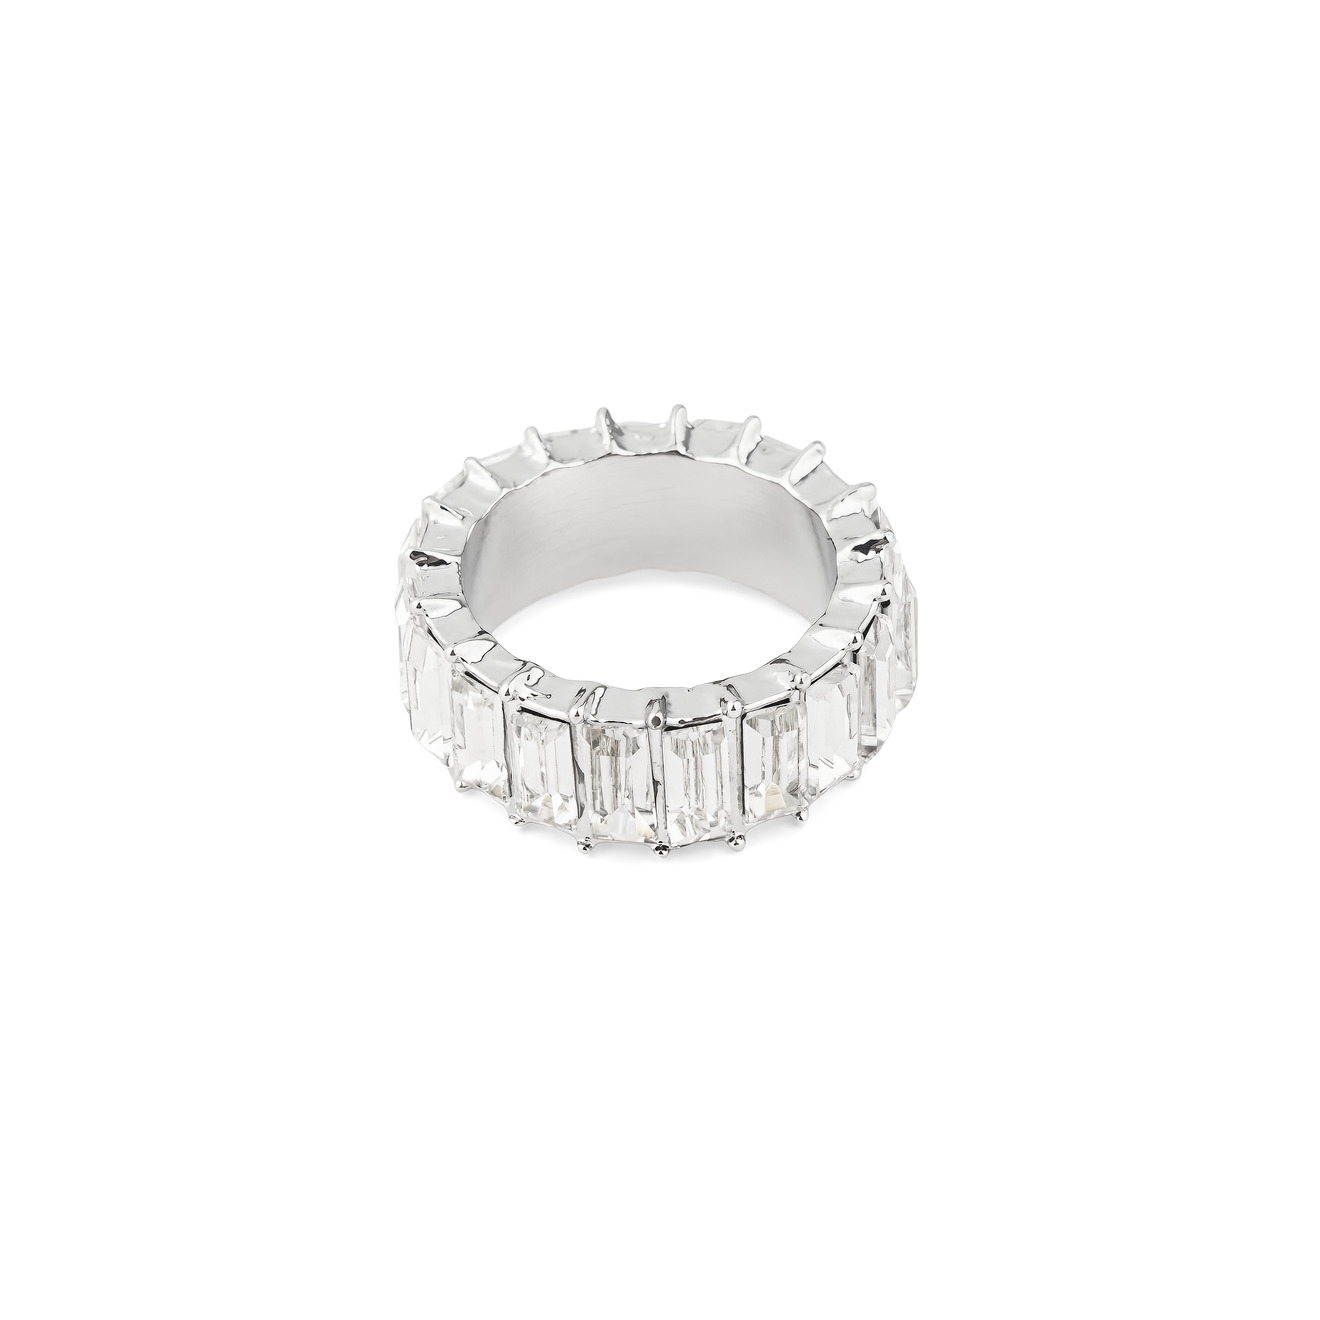 Herald Percy Серебристое кольцо с белыми кристаллами herald percy серебристое колье галстук с кристаллами в виде креста